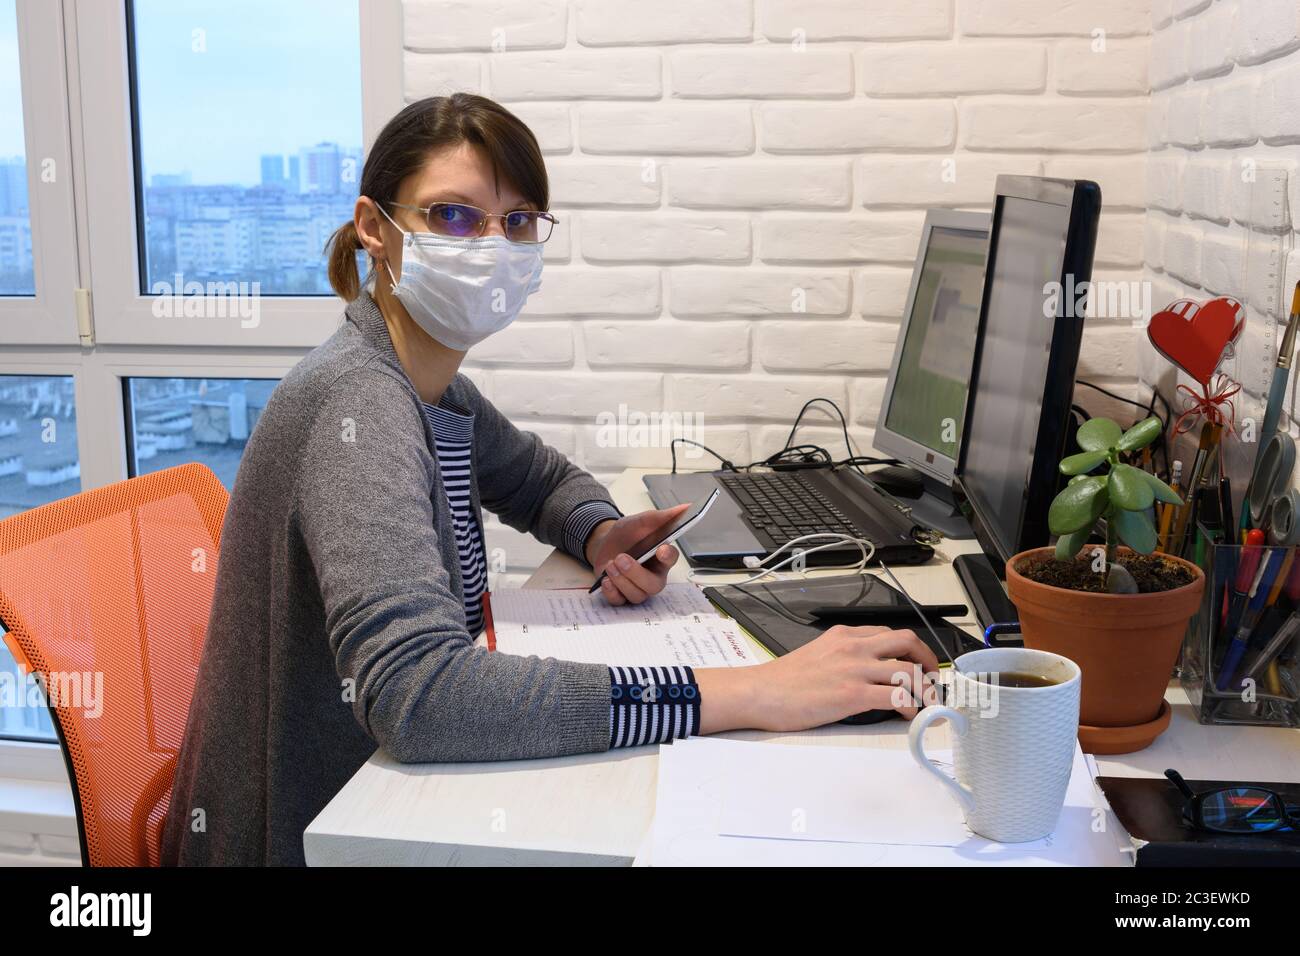 Une jeune fille malade dans un masque médical en auto-isolation fonctionne à distance, regarda dans le cadre Banque D'Images